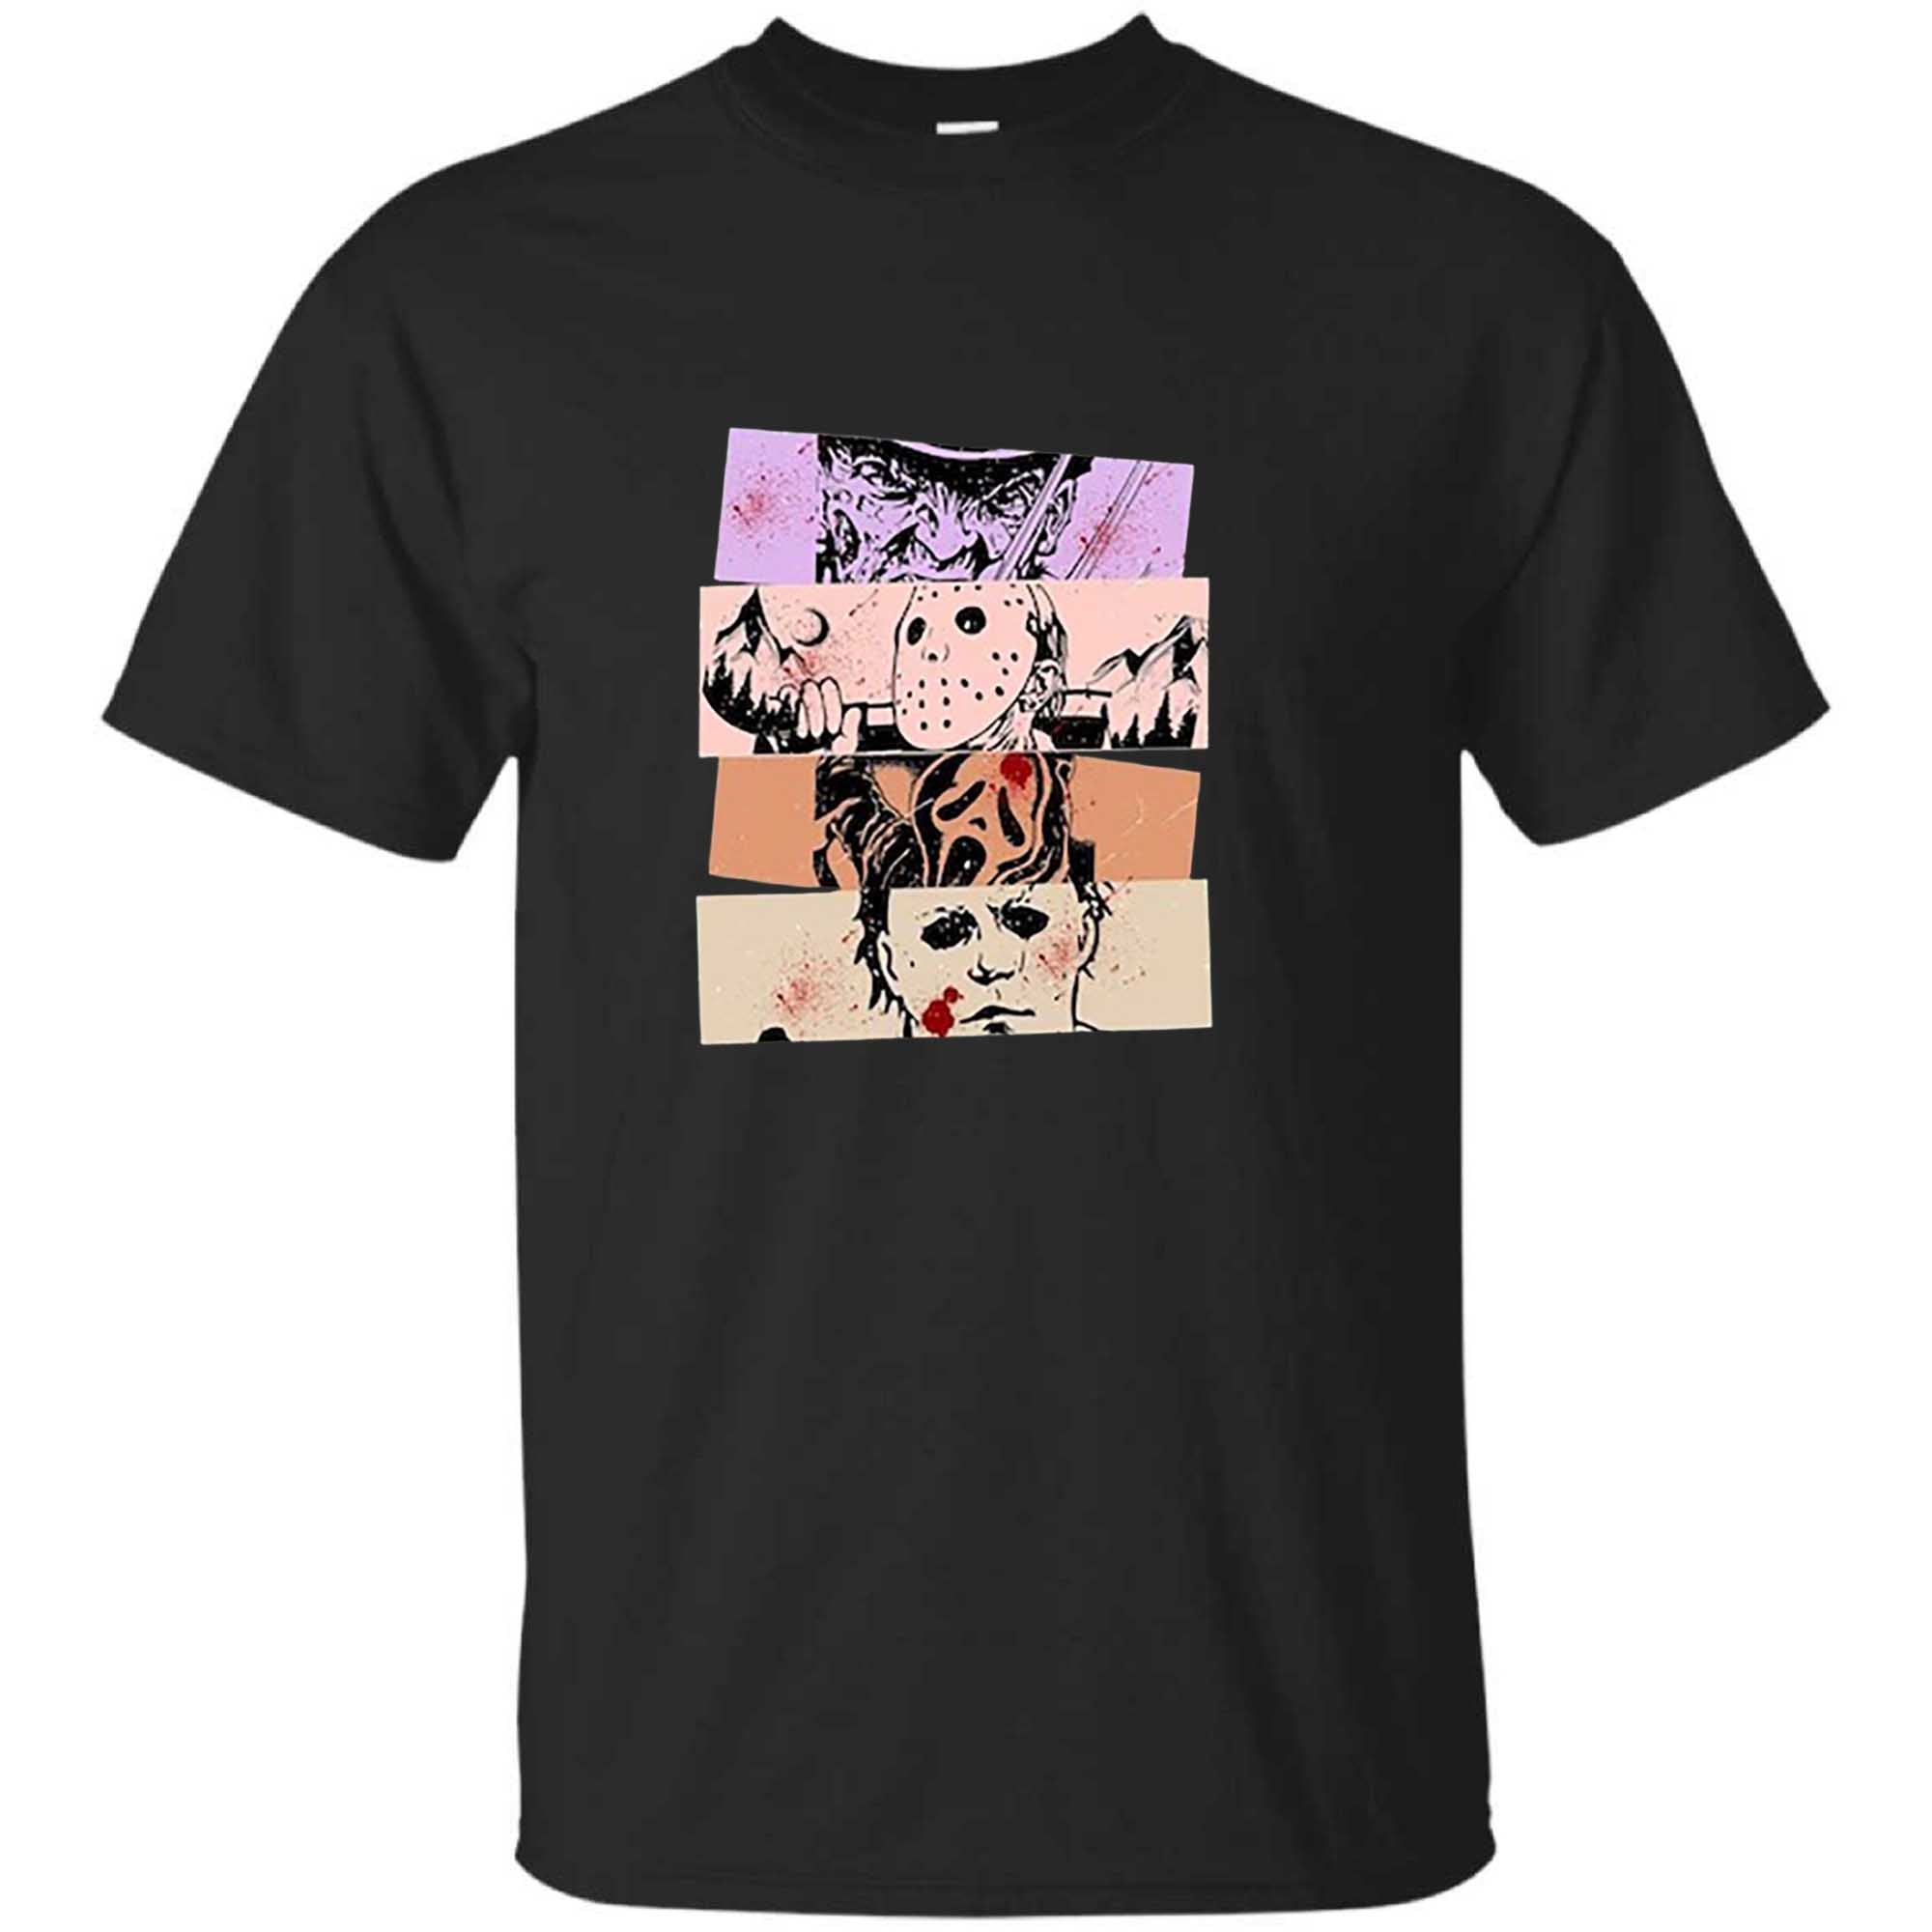 Skitongift Retro Scream Halloween T Shirt,Horror Movies Shirt Vintage